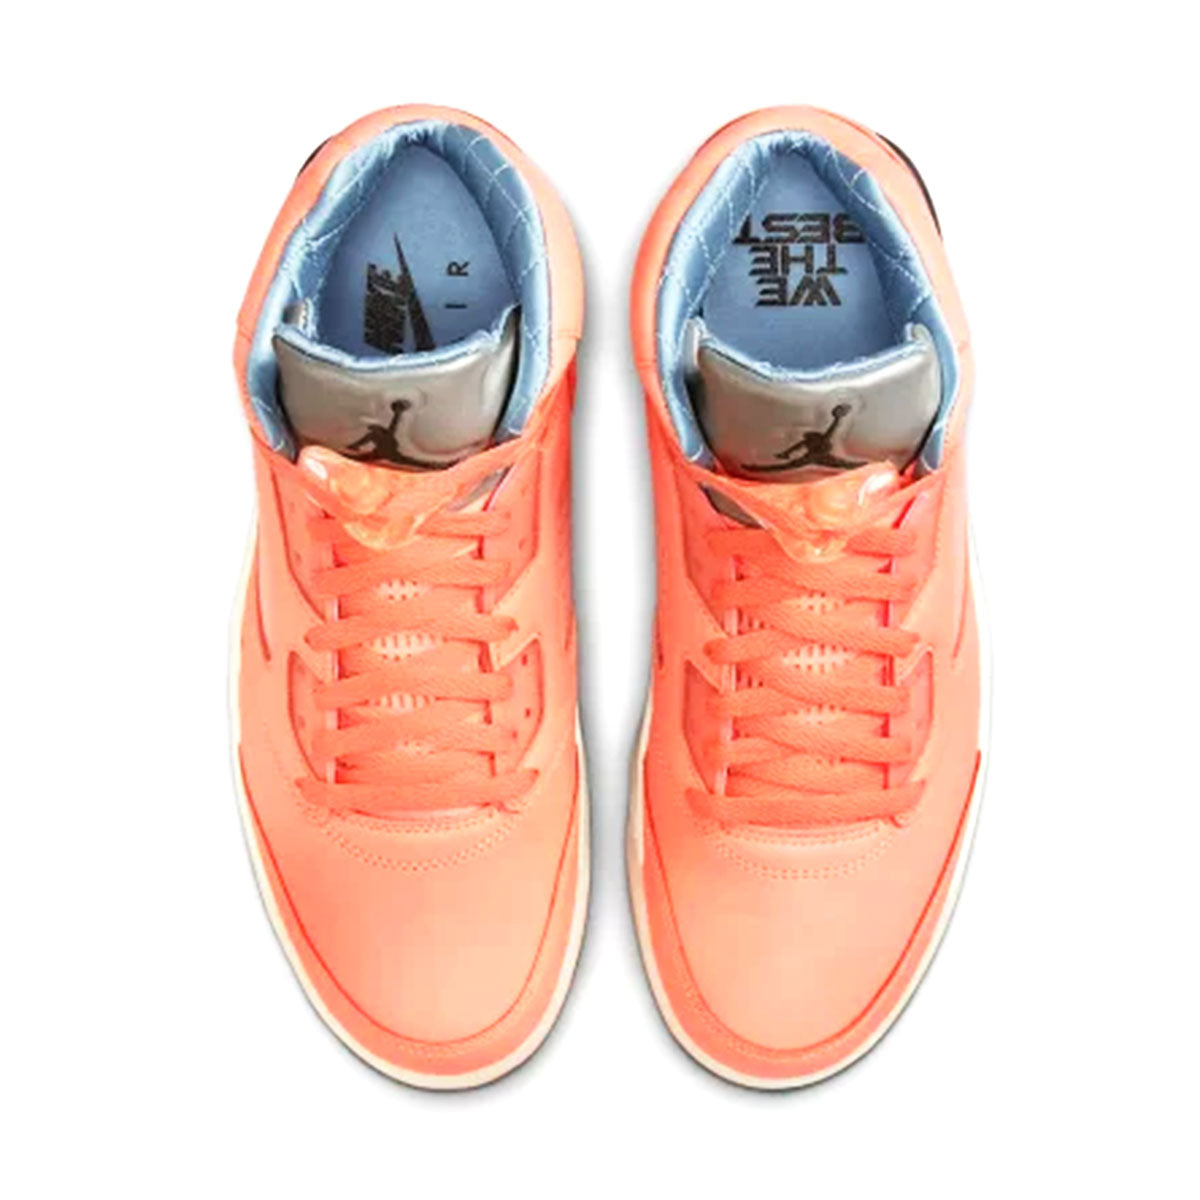 DJ Khaled × Nike Air Jordan 5 Retro Crimson Bliss DJキャレド × ナイキ エア ジョーダン 5 レトロ  " クリムゾン ブリス "【DV4982-641】